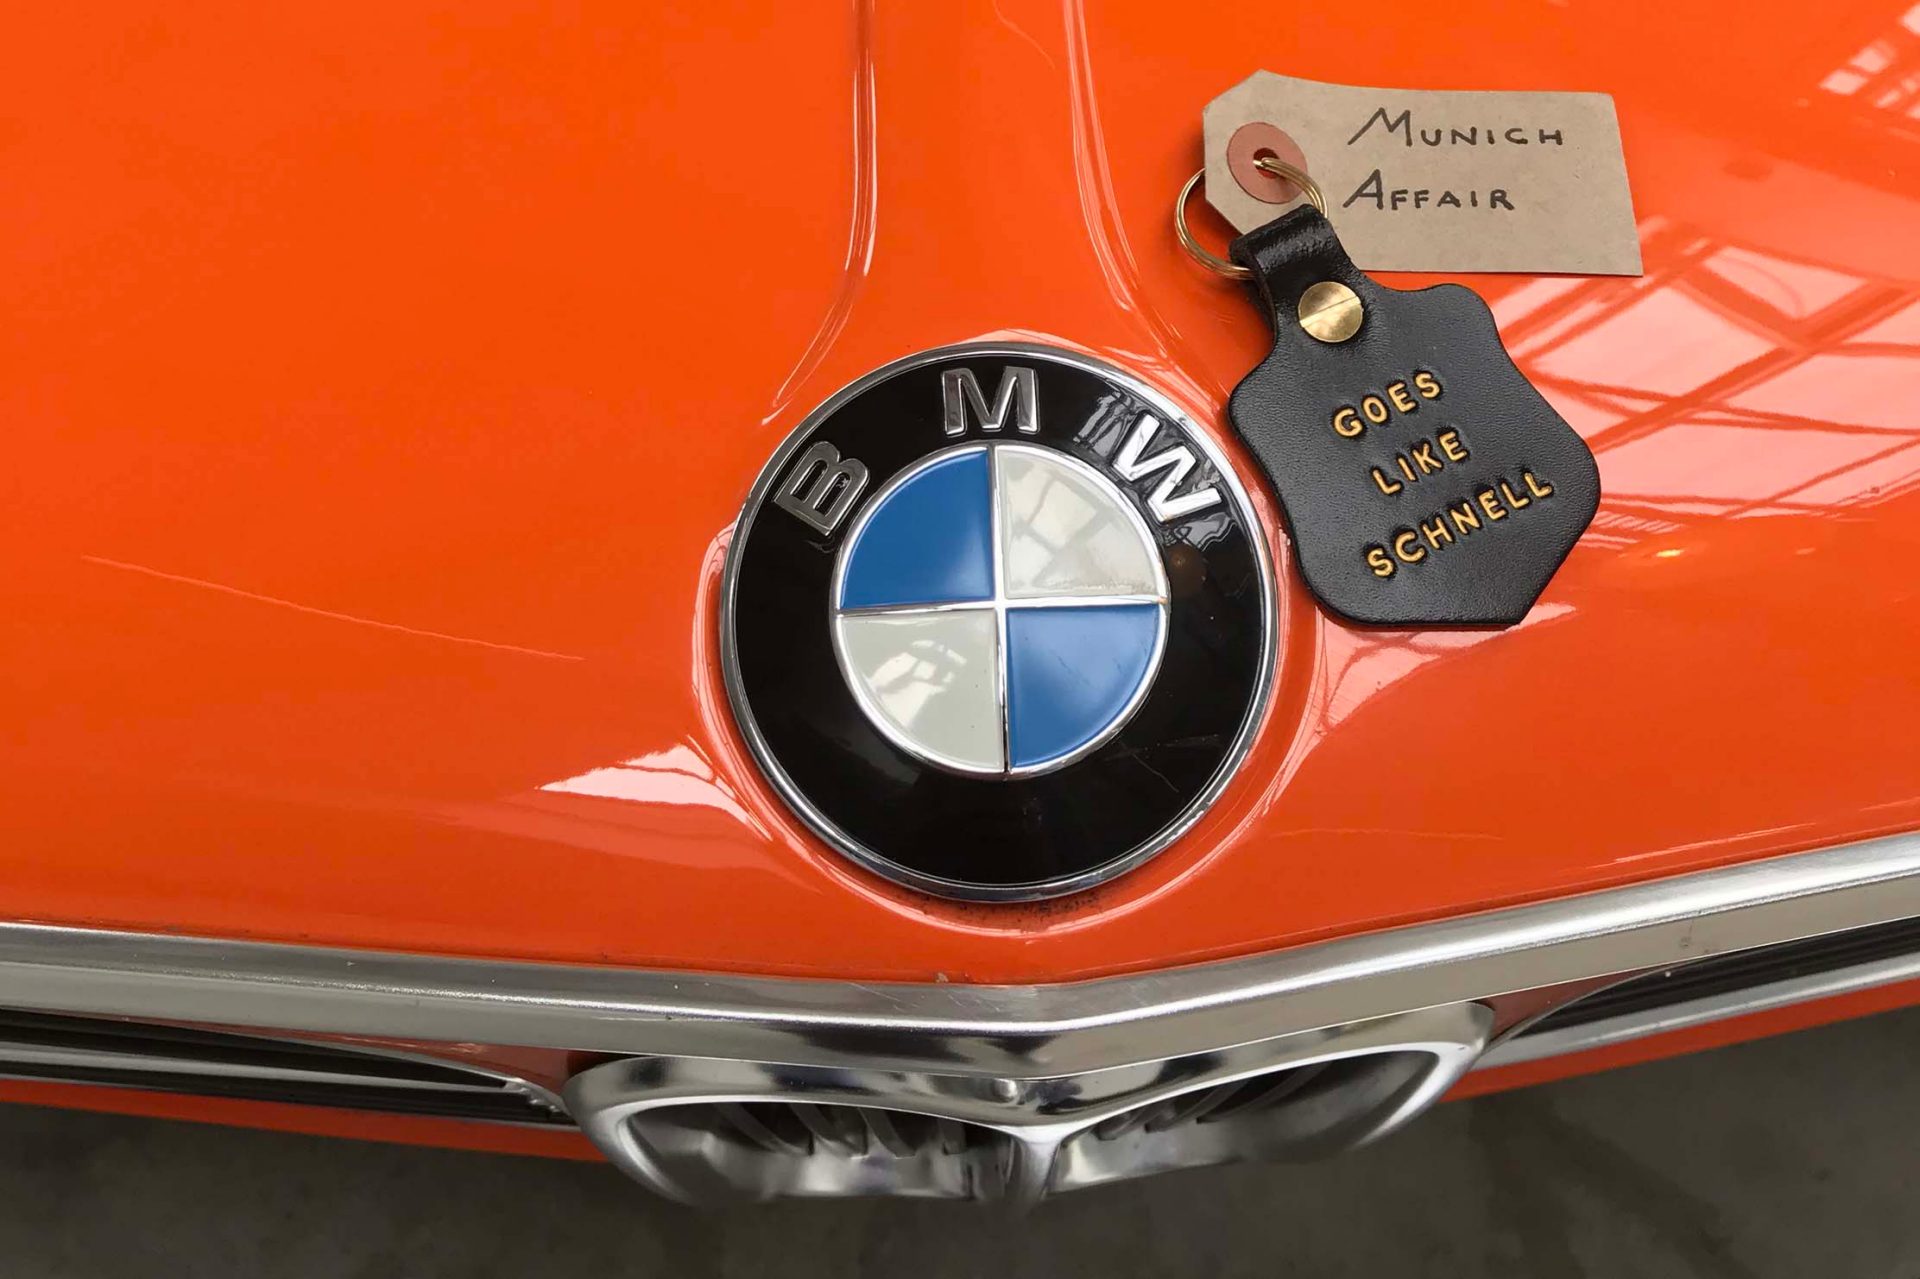 Arrivato a Monaco. Das italienische Unikat wird fortan den Zündschlüssel unseres BMW 2002 tii schmücken.